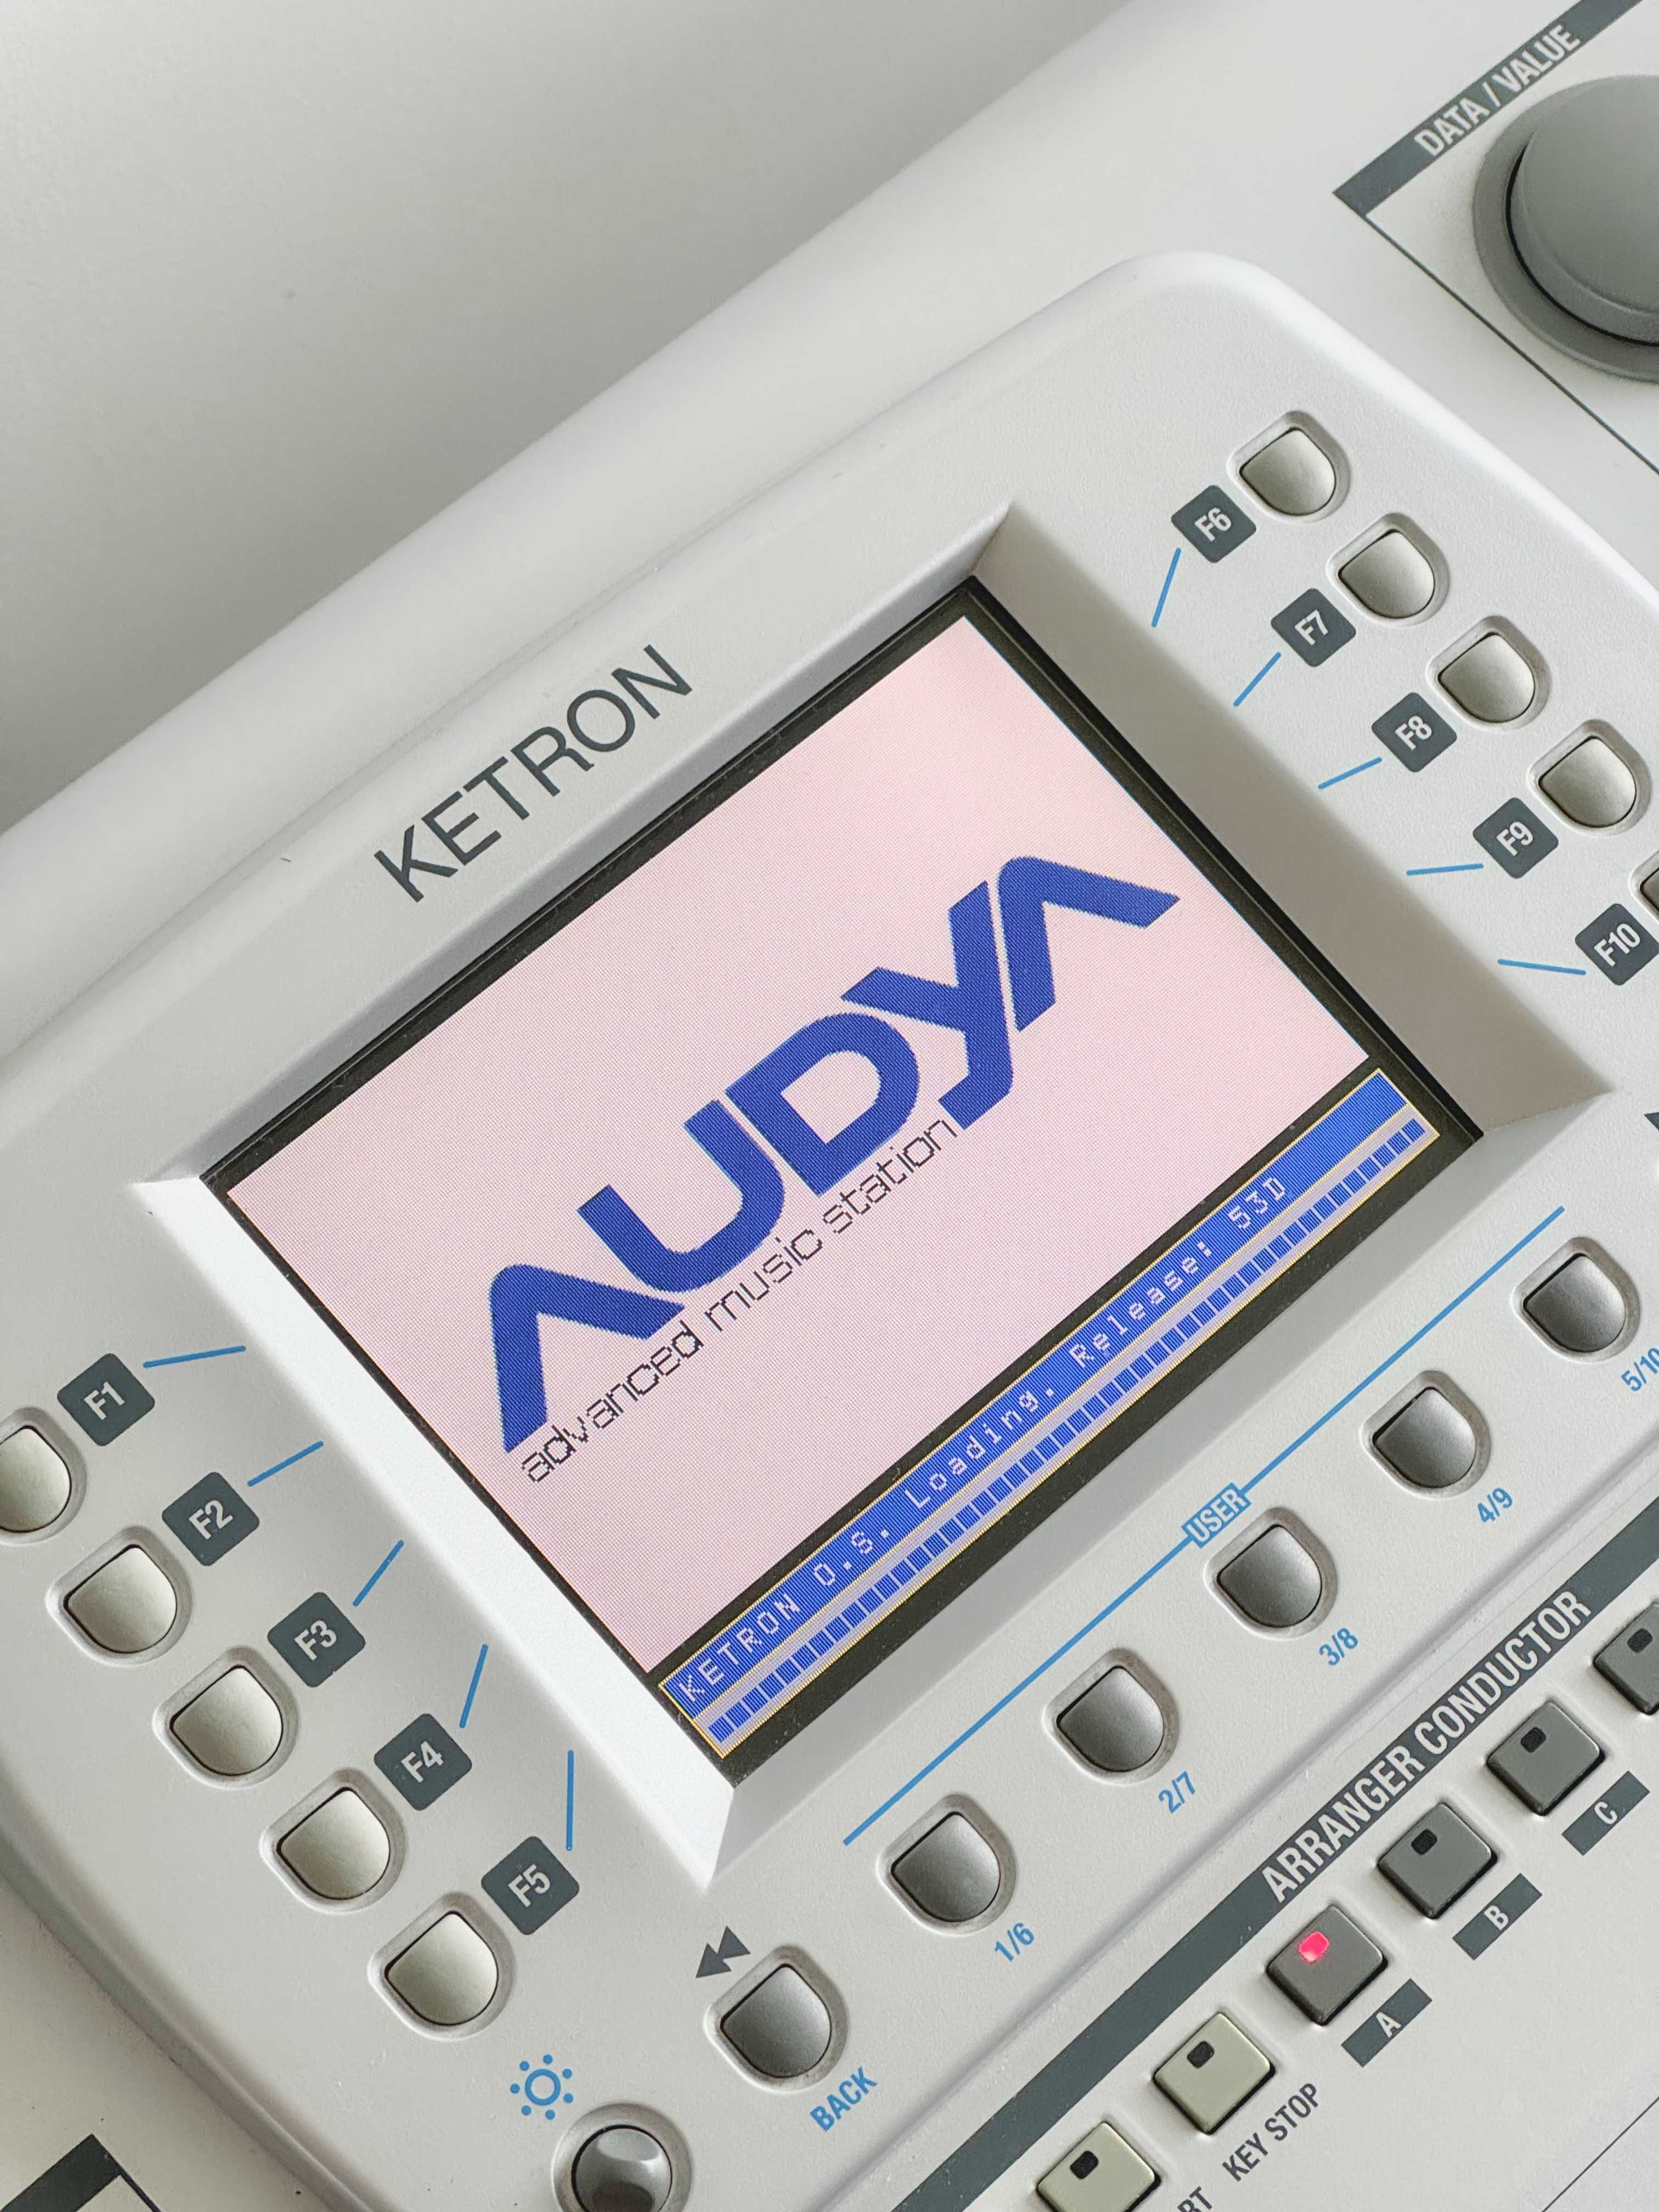 Nowszy model keyboard Ketron Audya 76 SSD ram